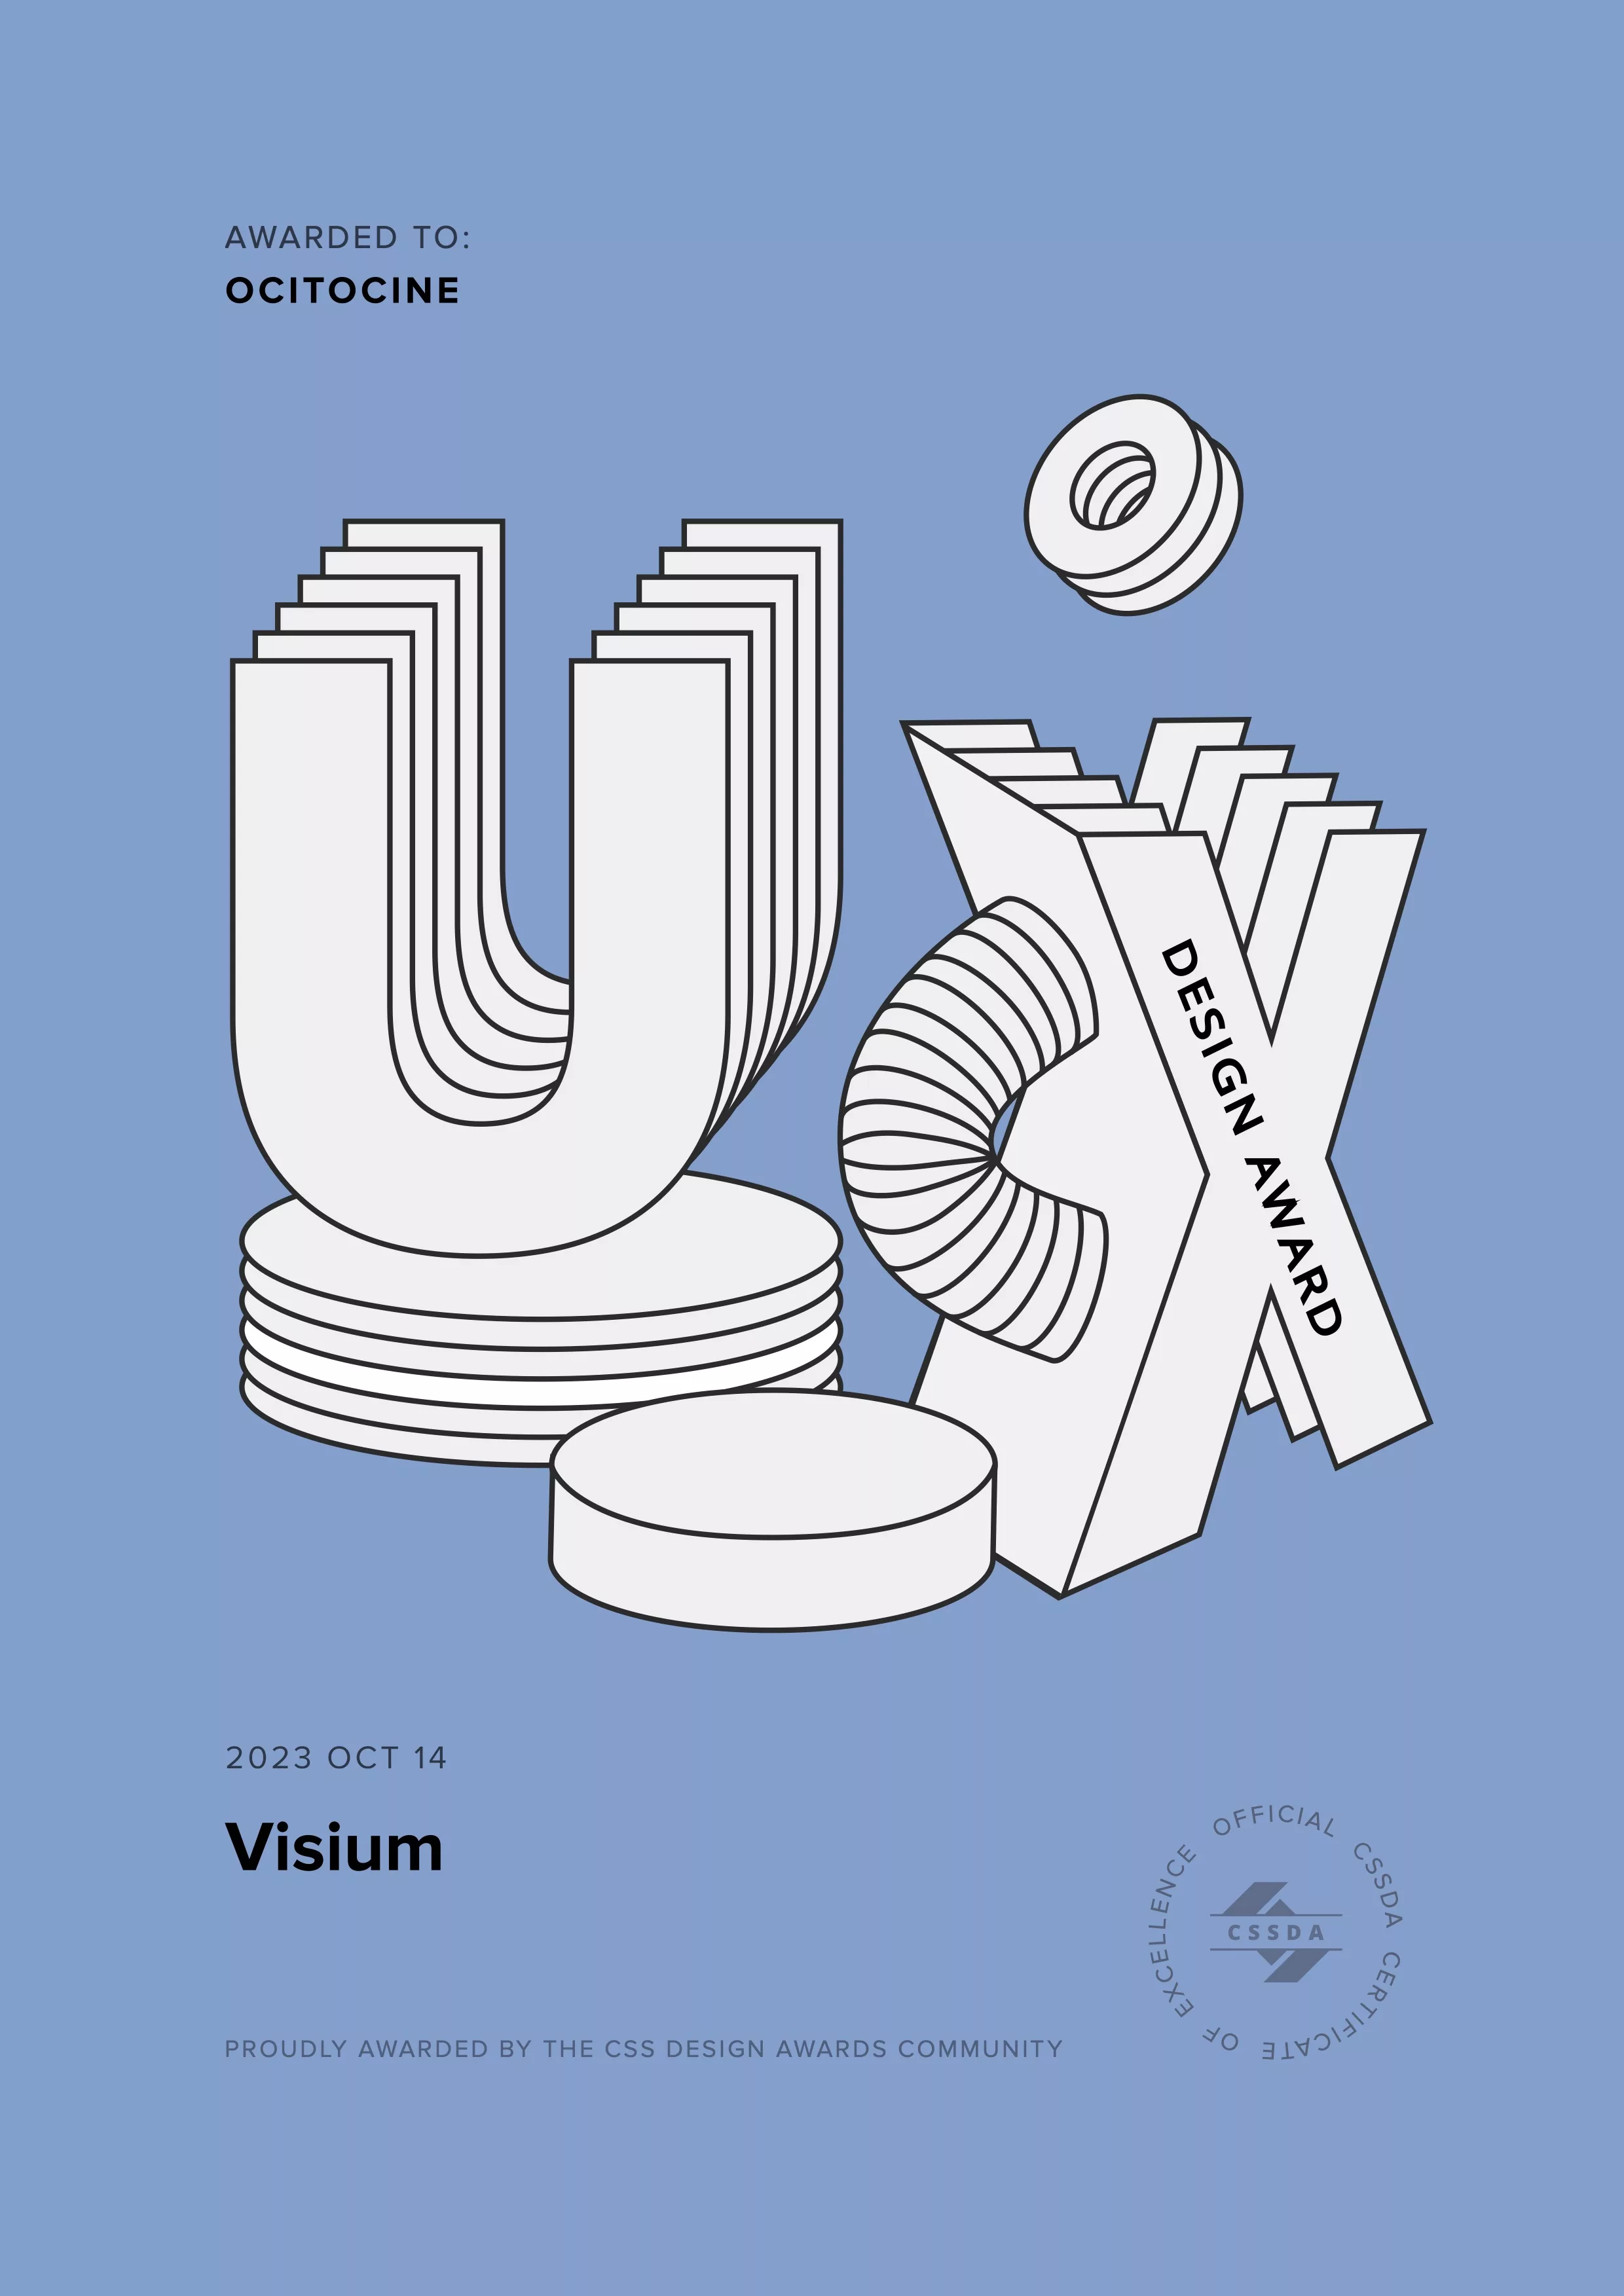 Ocitocine, agence créative web et branding, a remporté un prix "CSSDA UX Design Award" pour la réalisation du site web visium.ch